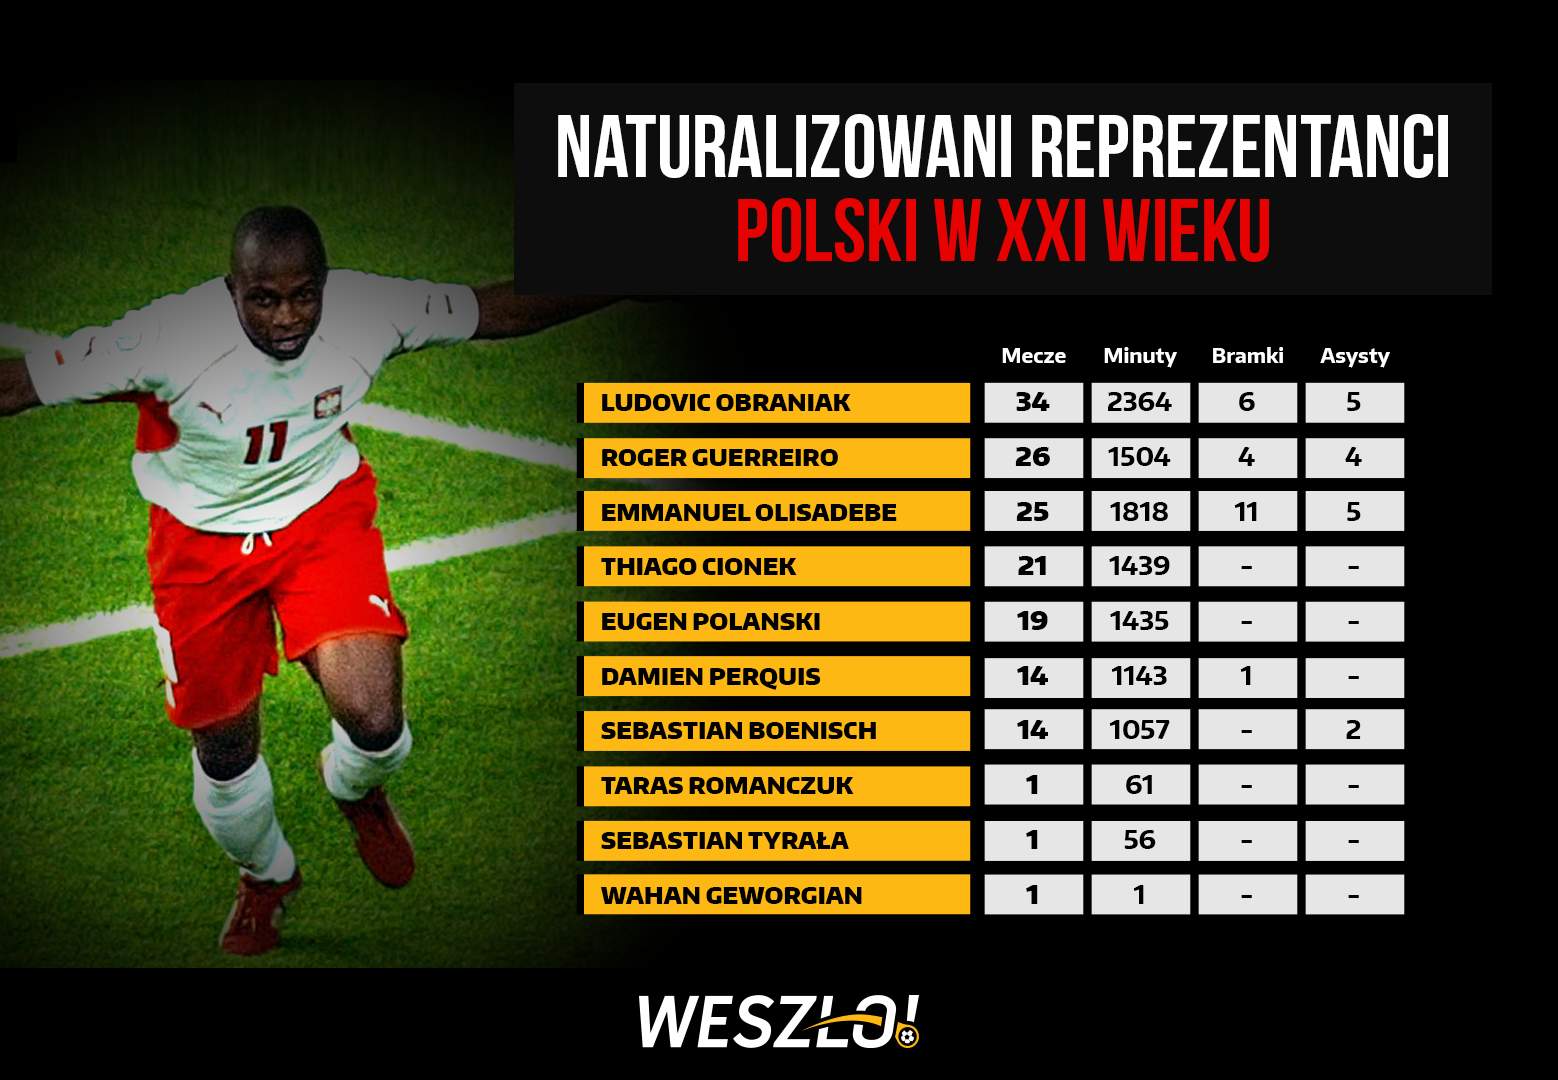 Naturalizowani piłkarze w reprezentacji Polski - ranking, lista